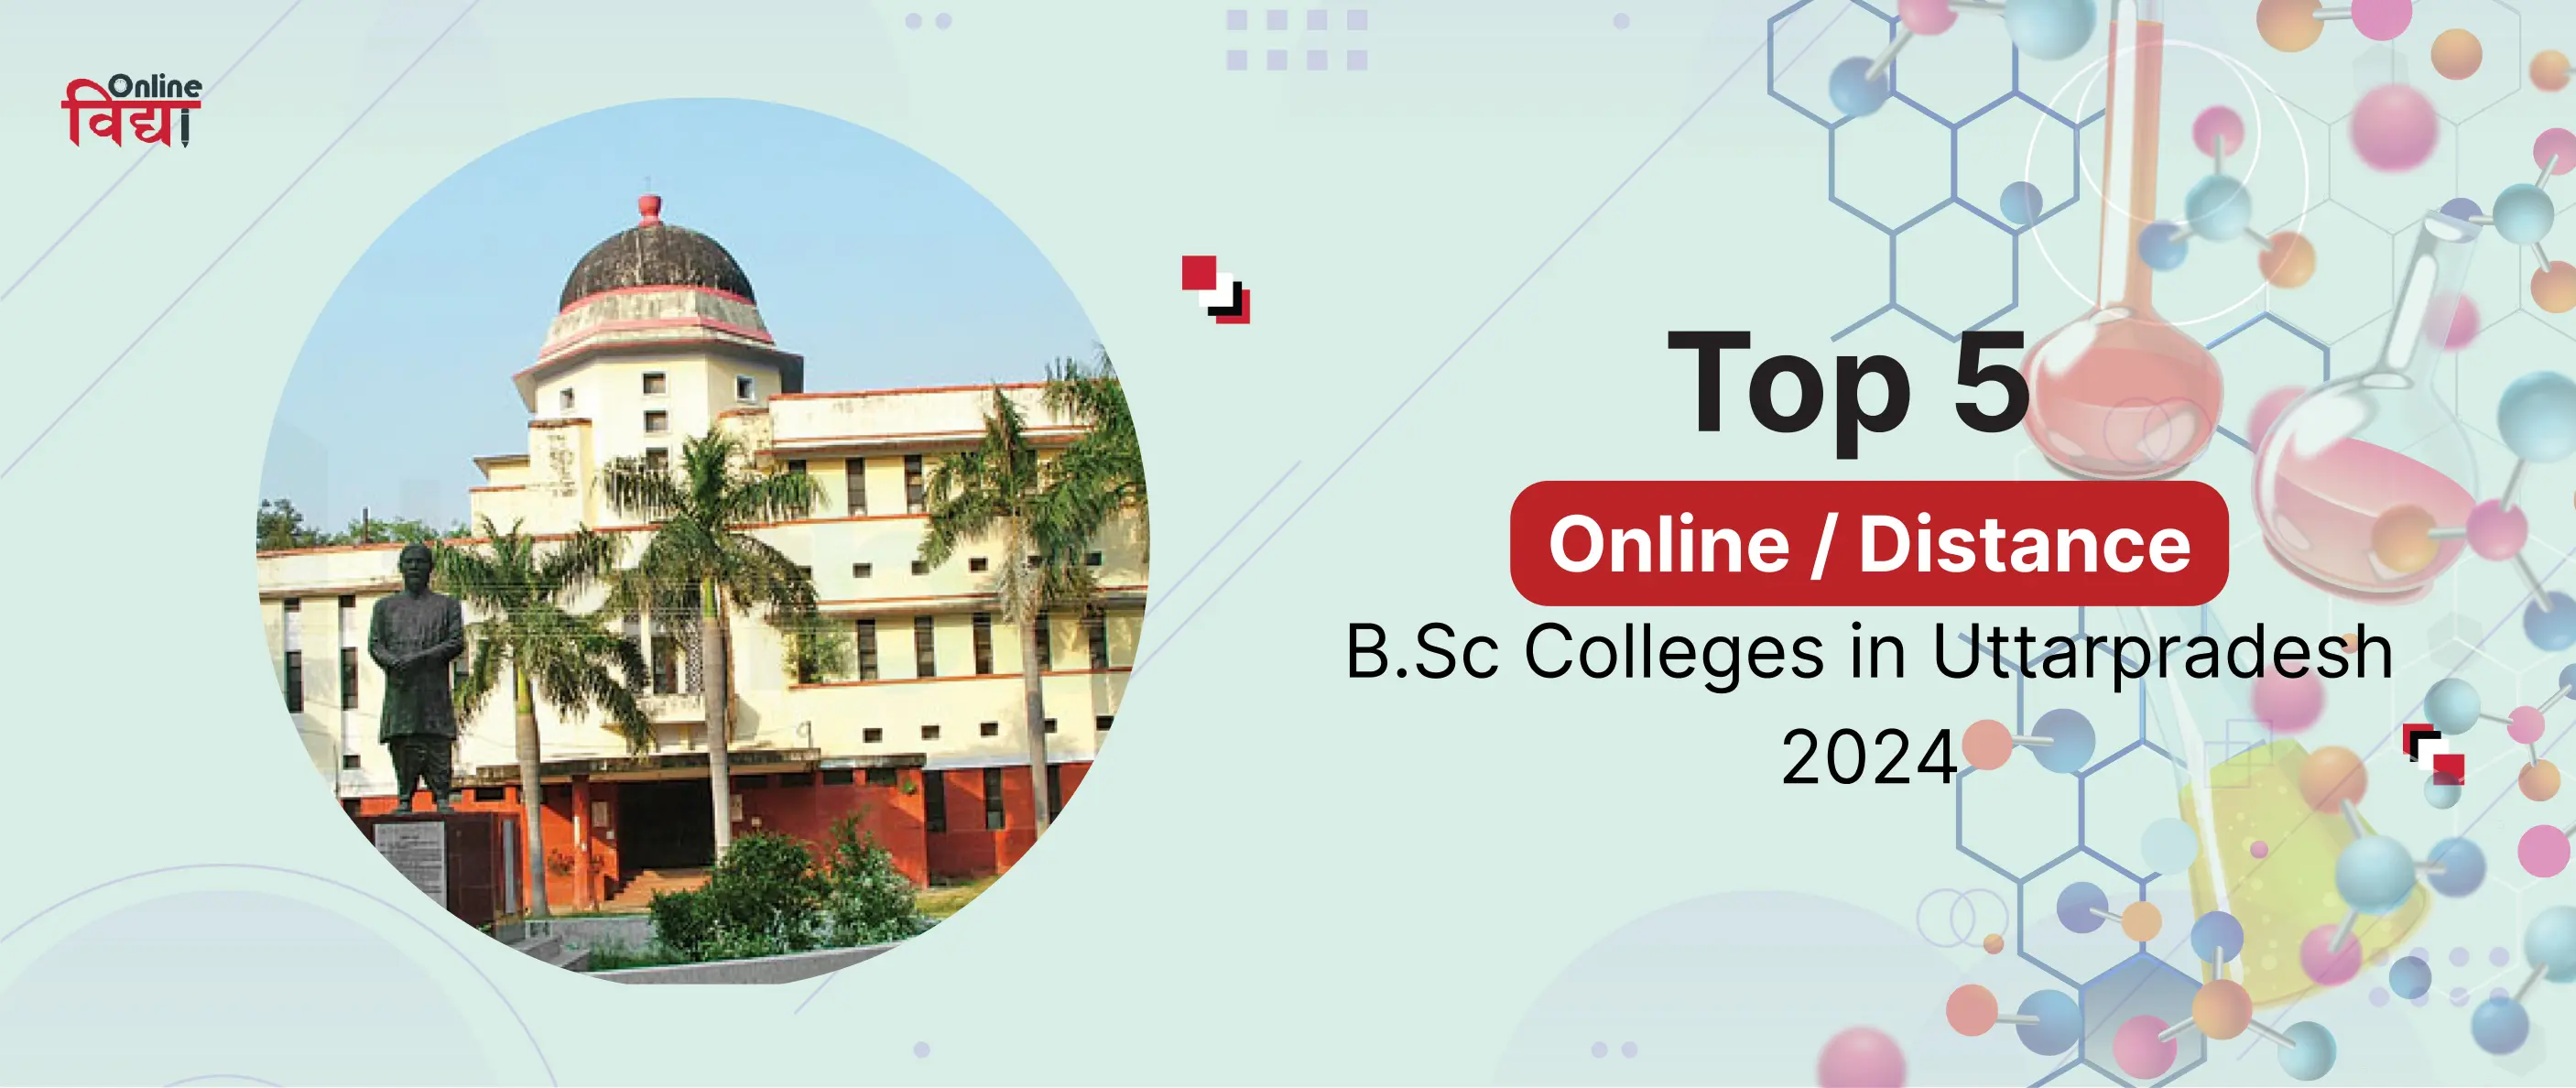 Top 5 Online/ Distance B.Sc Colleges in Uttar Pradesh 2024